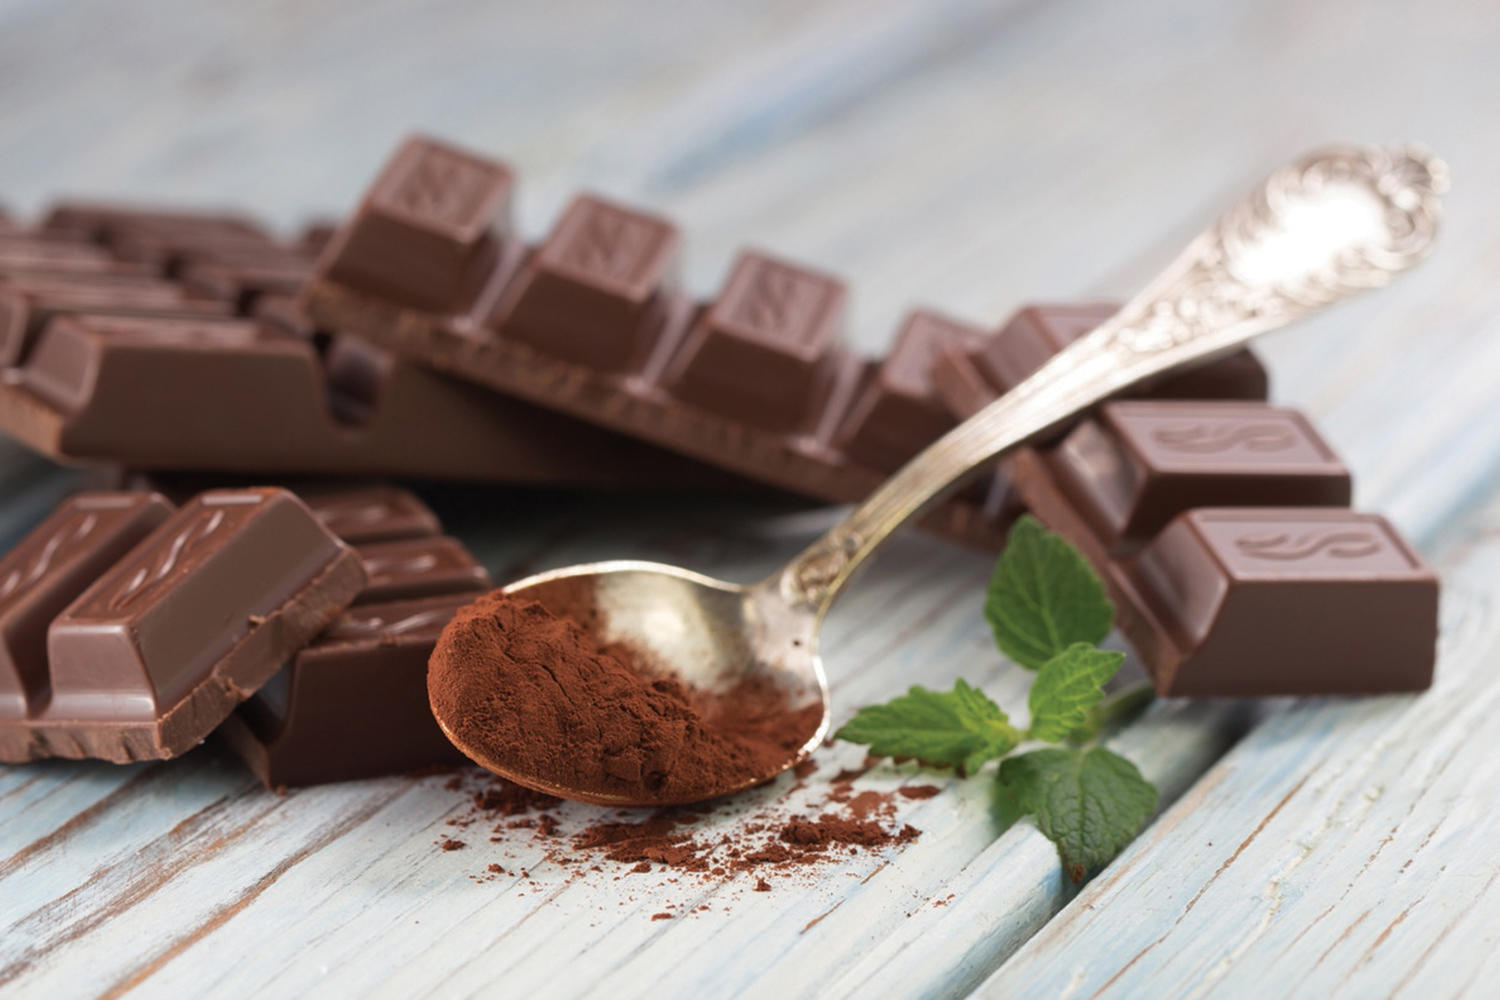 Шоколад возбуждает? Миф или реальность? Темный шоколад: польза для организма | Женский журнал Mialady.ru